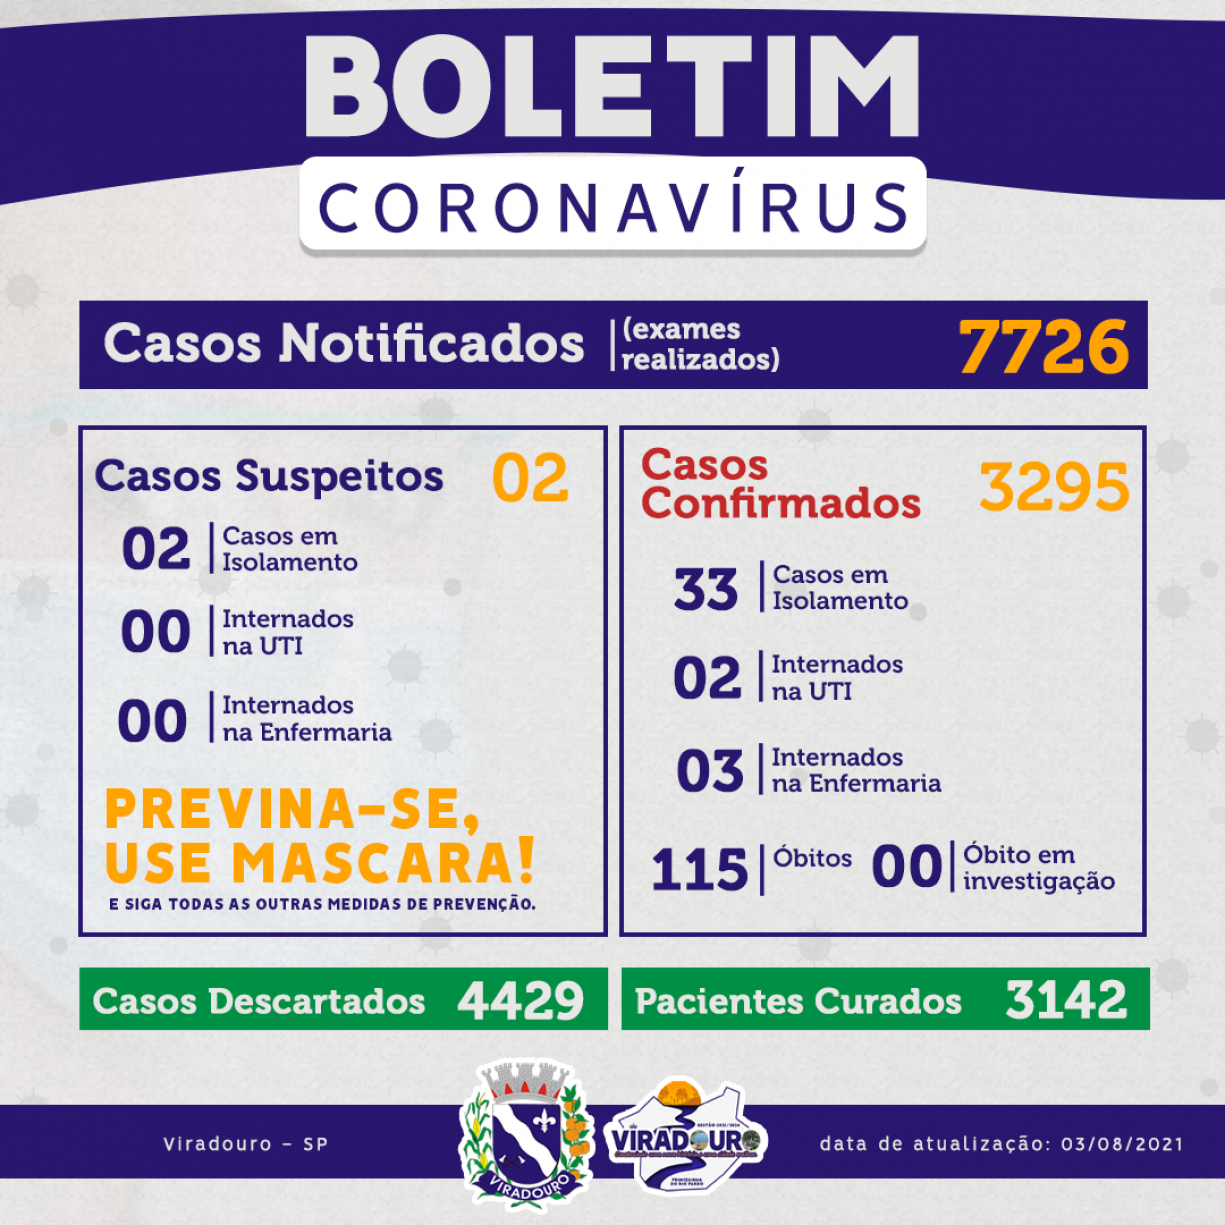 CORONAVÍRUS: BOLETIM EPIDEMIOLÓGICO (ATUALIZAÇÃO 03/08/2021)